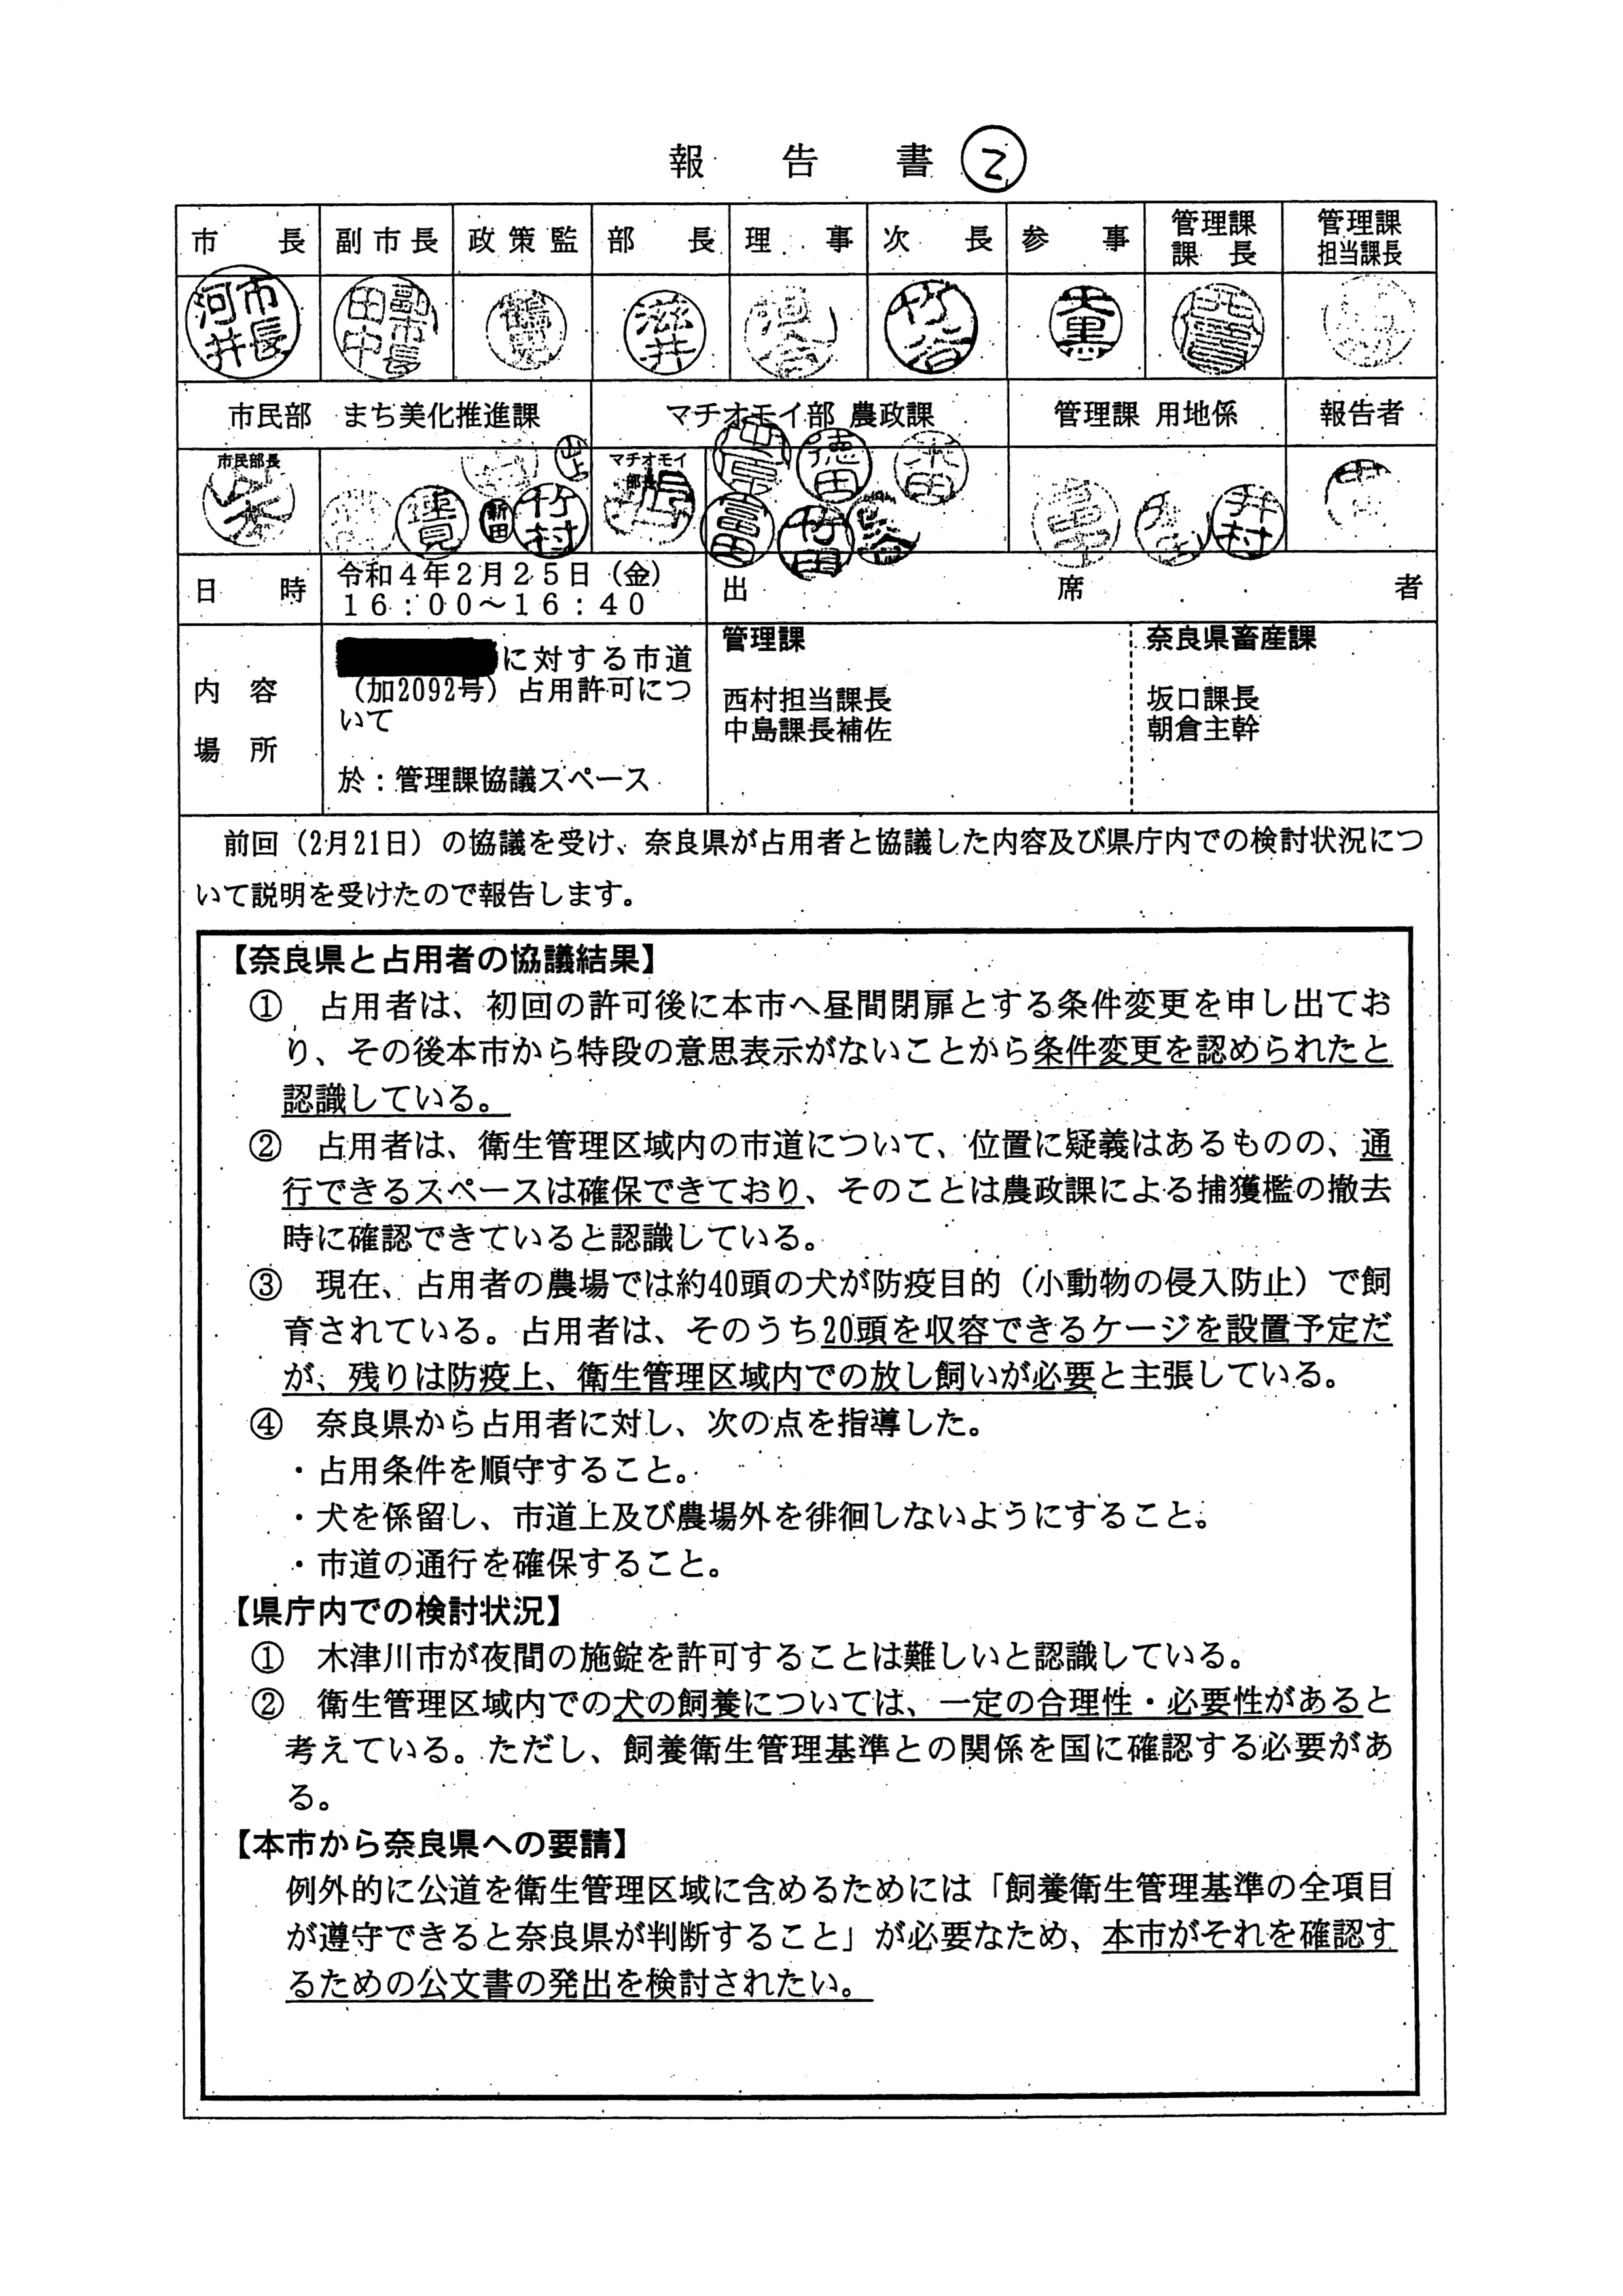 令和4年2月25日-村田商店に対する市道（加2092号）占用許可について（奈良県との協議）-01